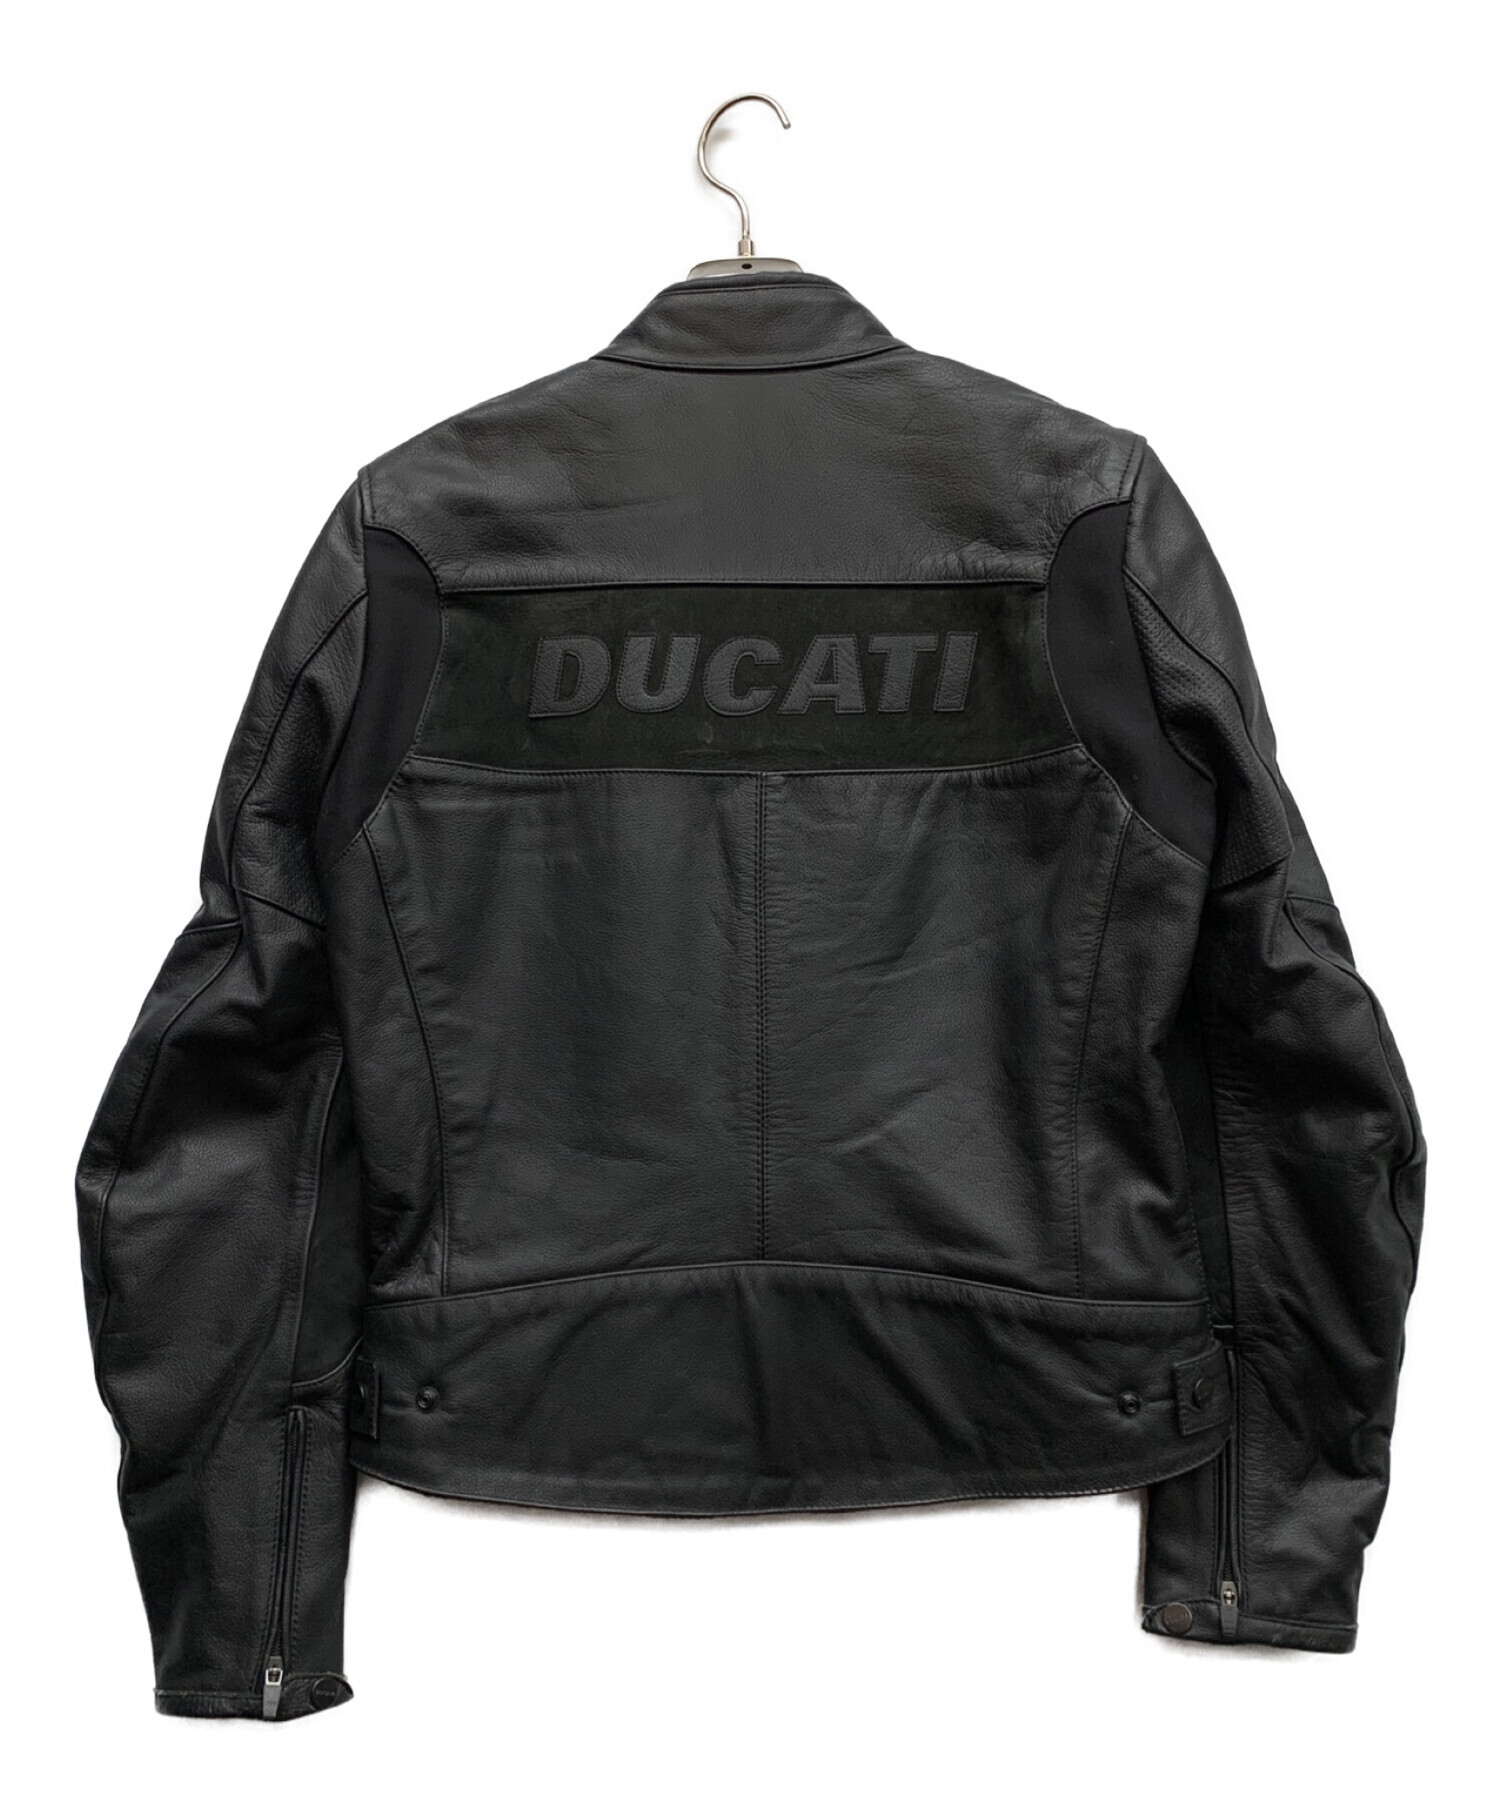 DUCATI (ドゥカティ) ライダースジャケット ブラック サイズ:S